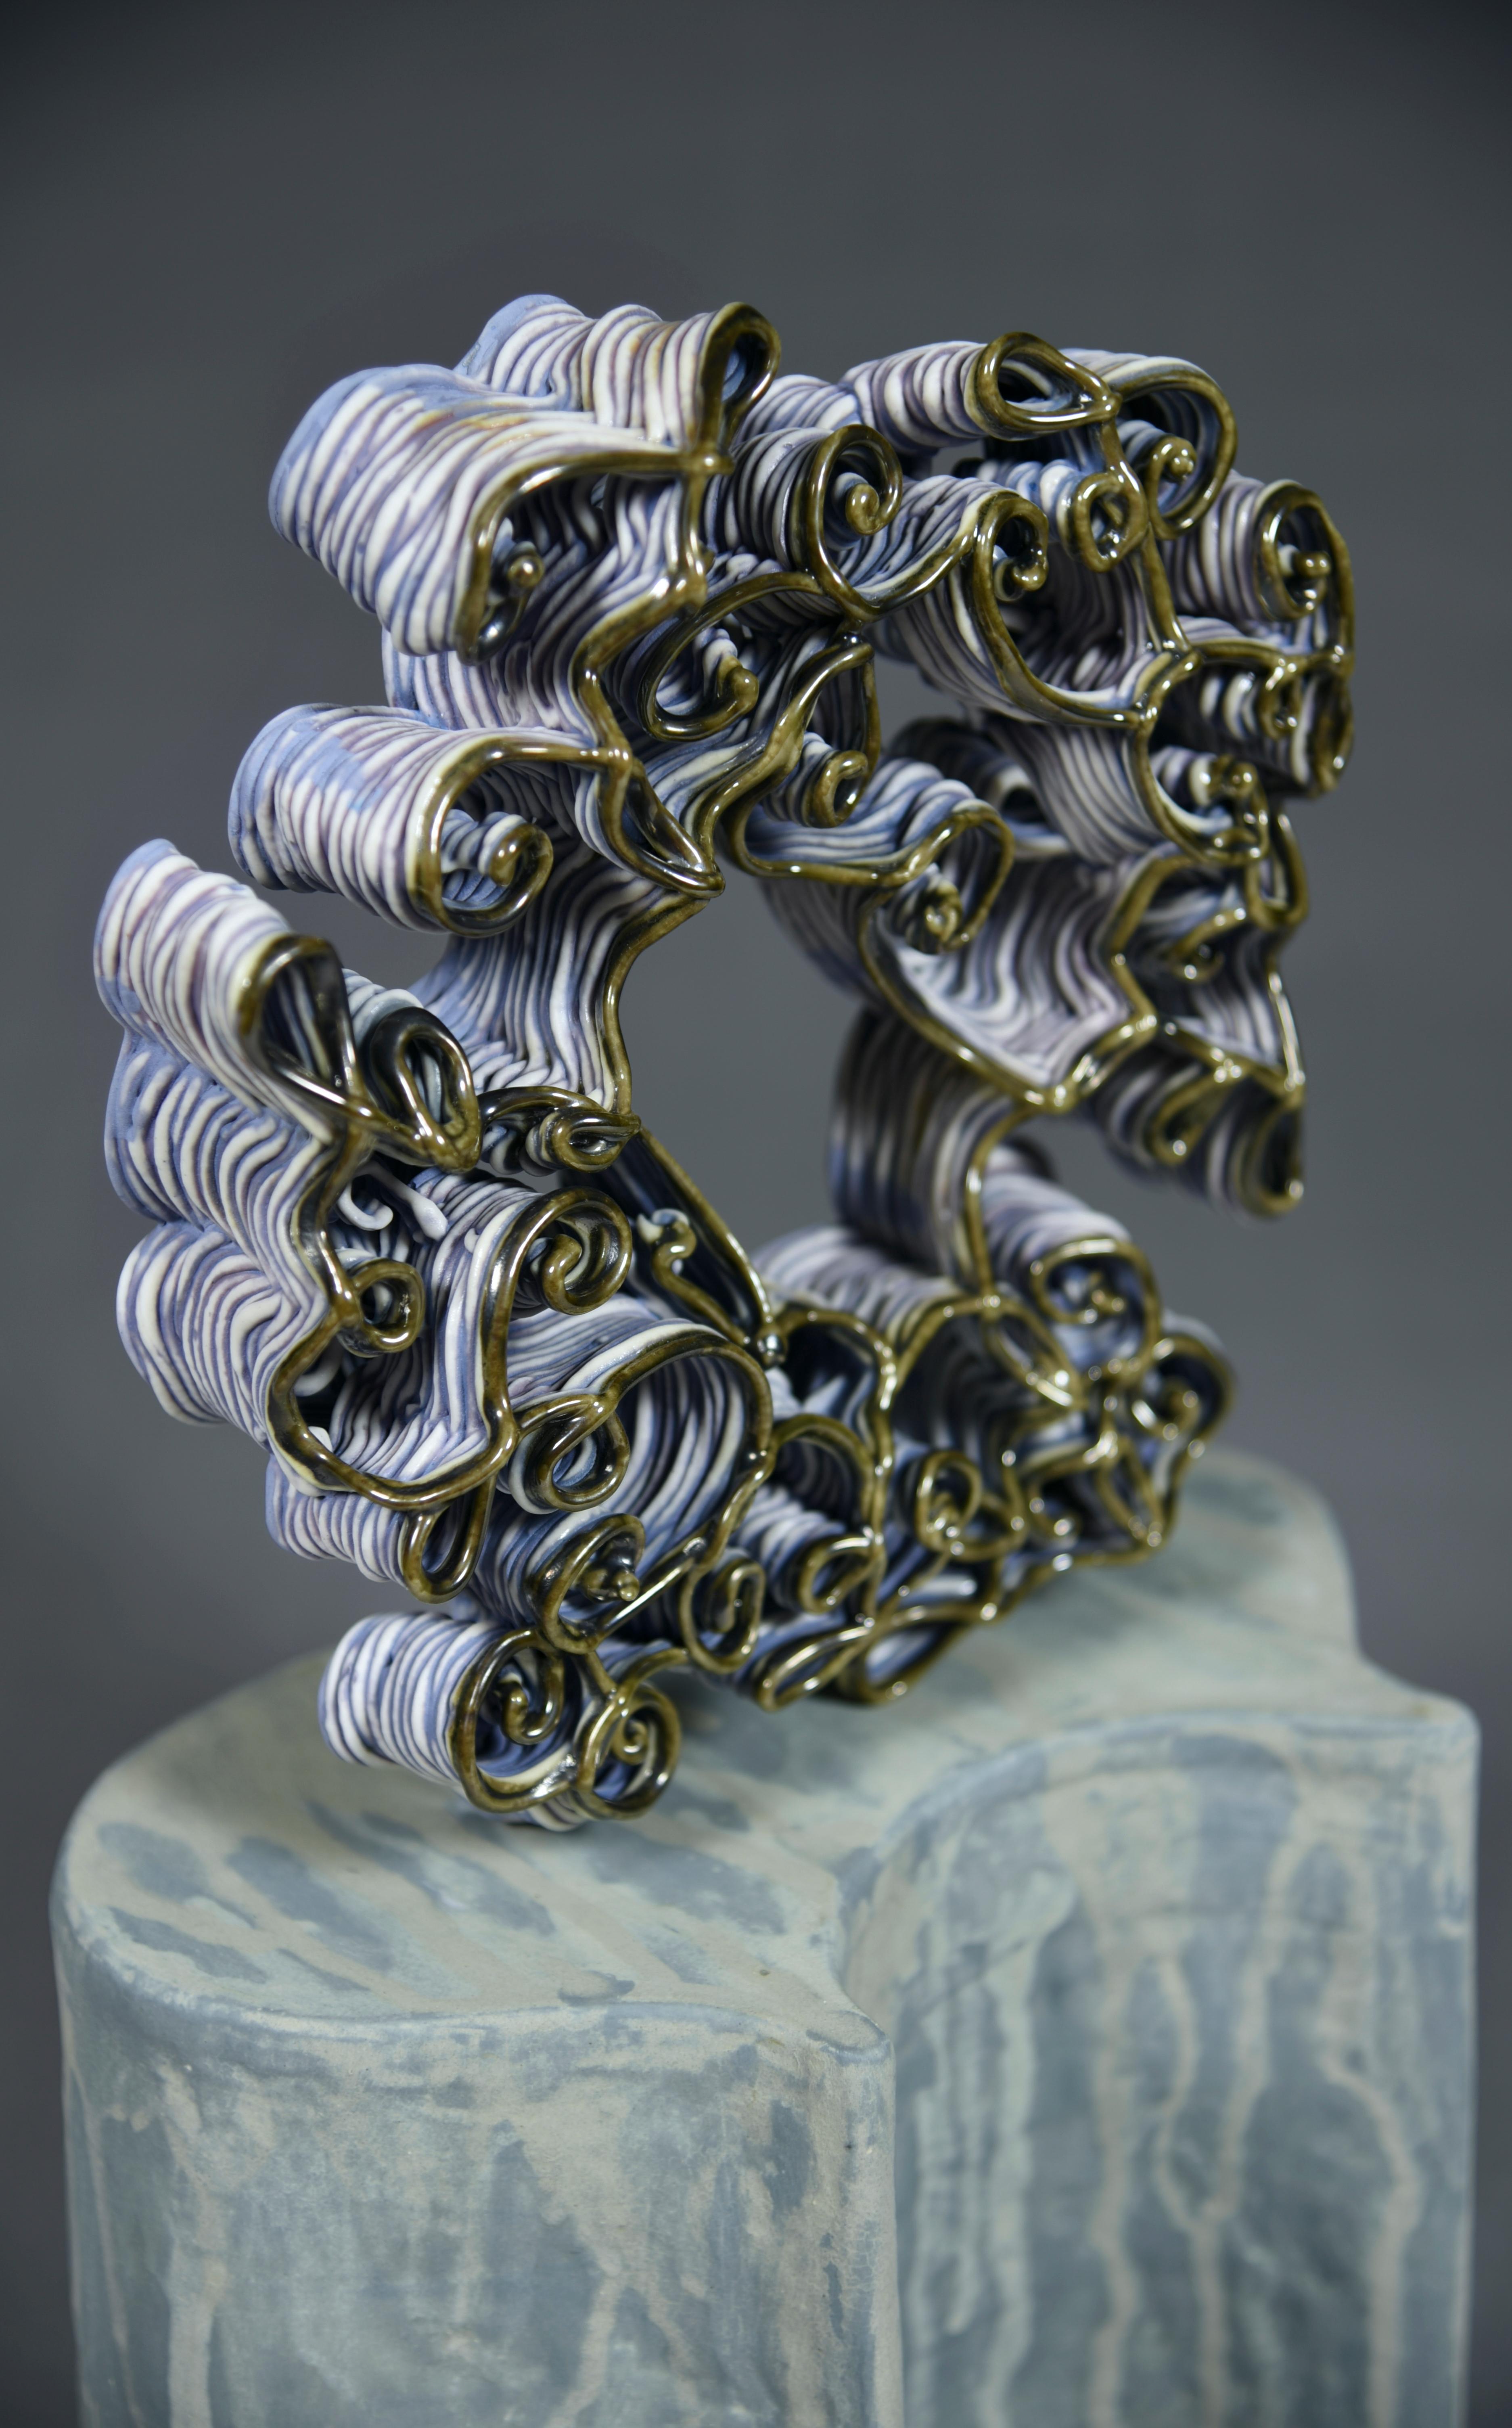 Ampoules - Sculpture de Stephanie Lanter